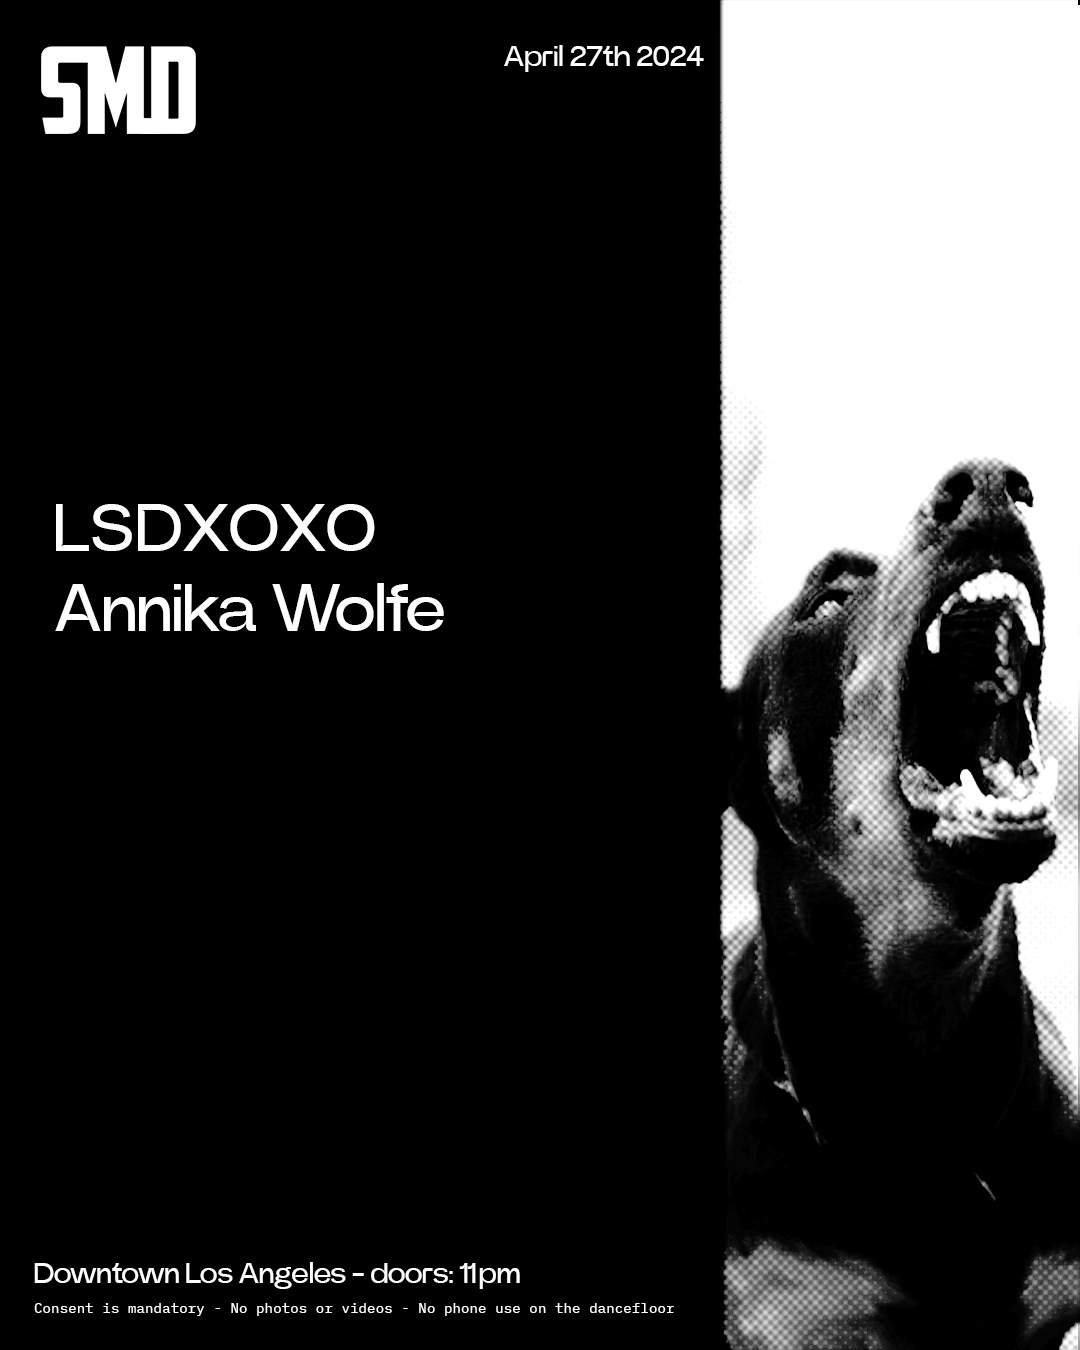 SMD - LSDXOXO & Annika Wolfe - Página frontal